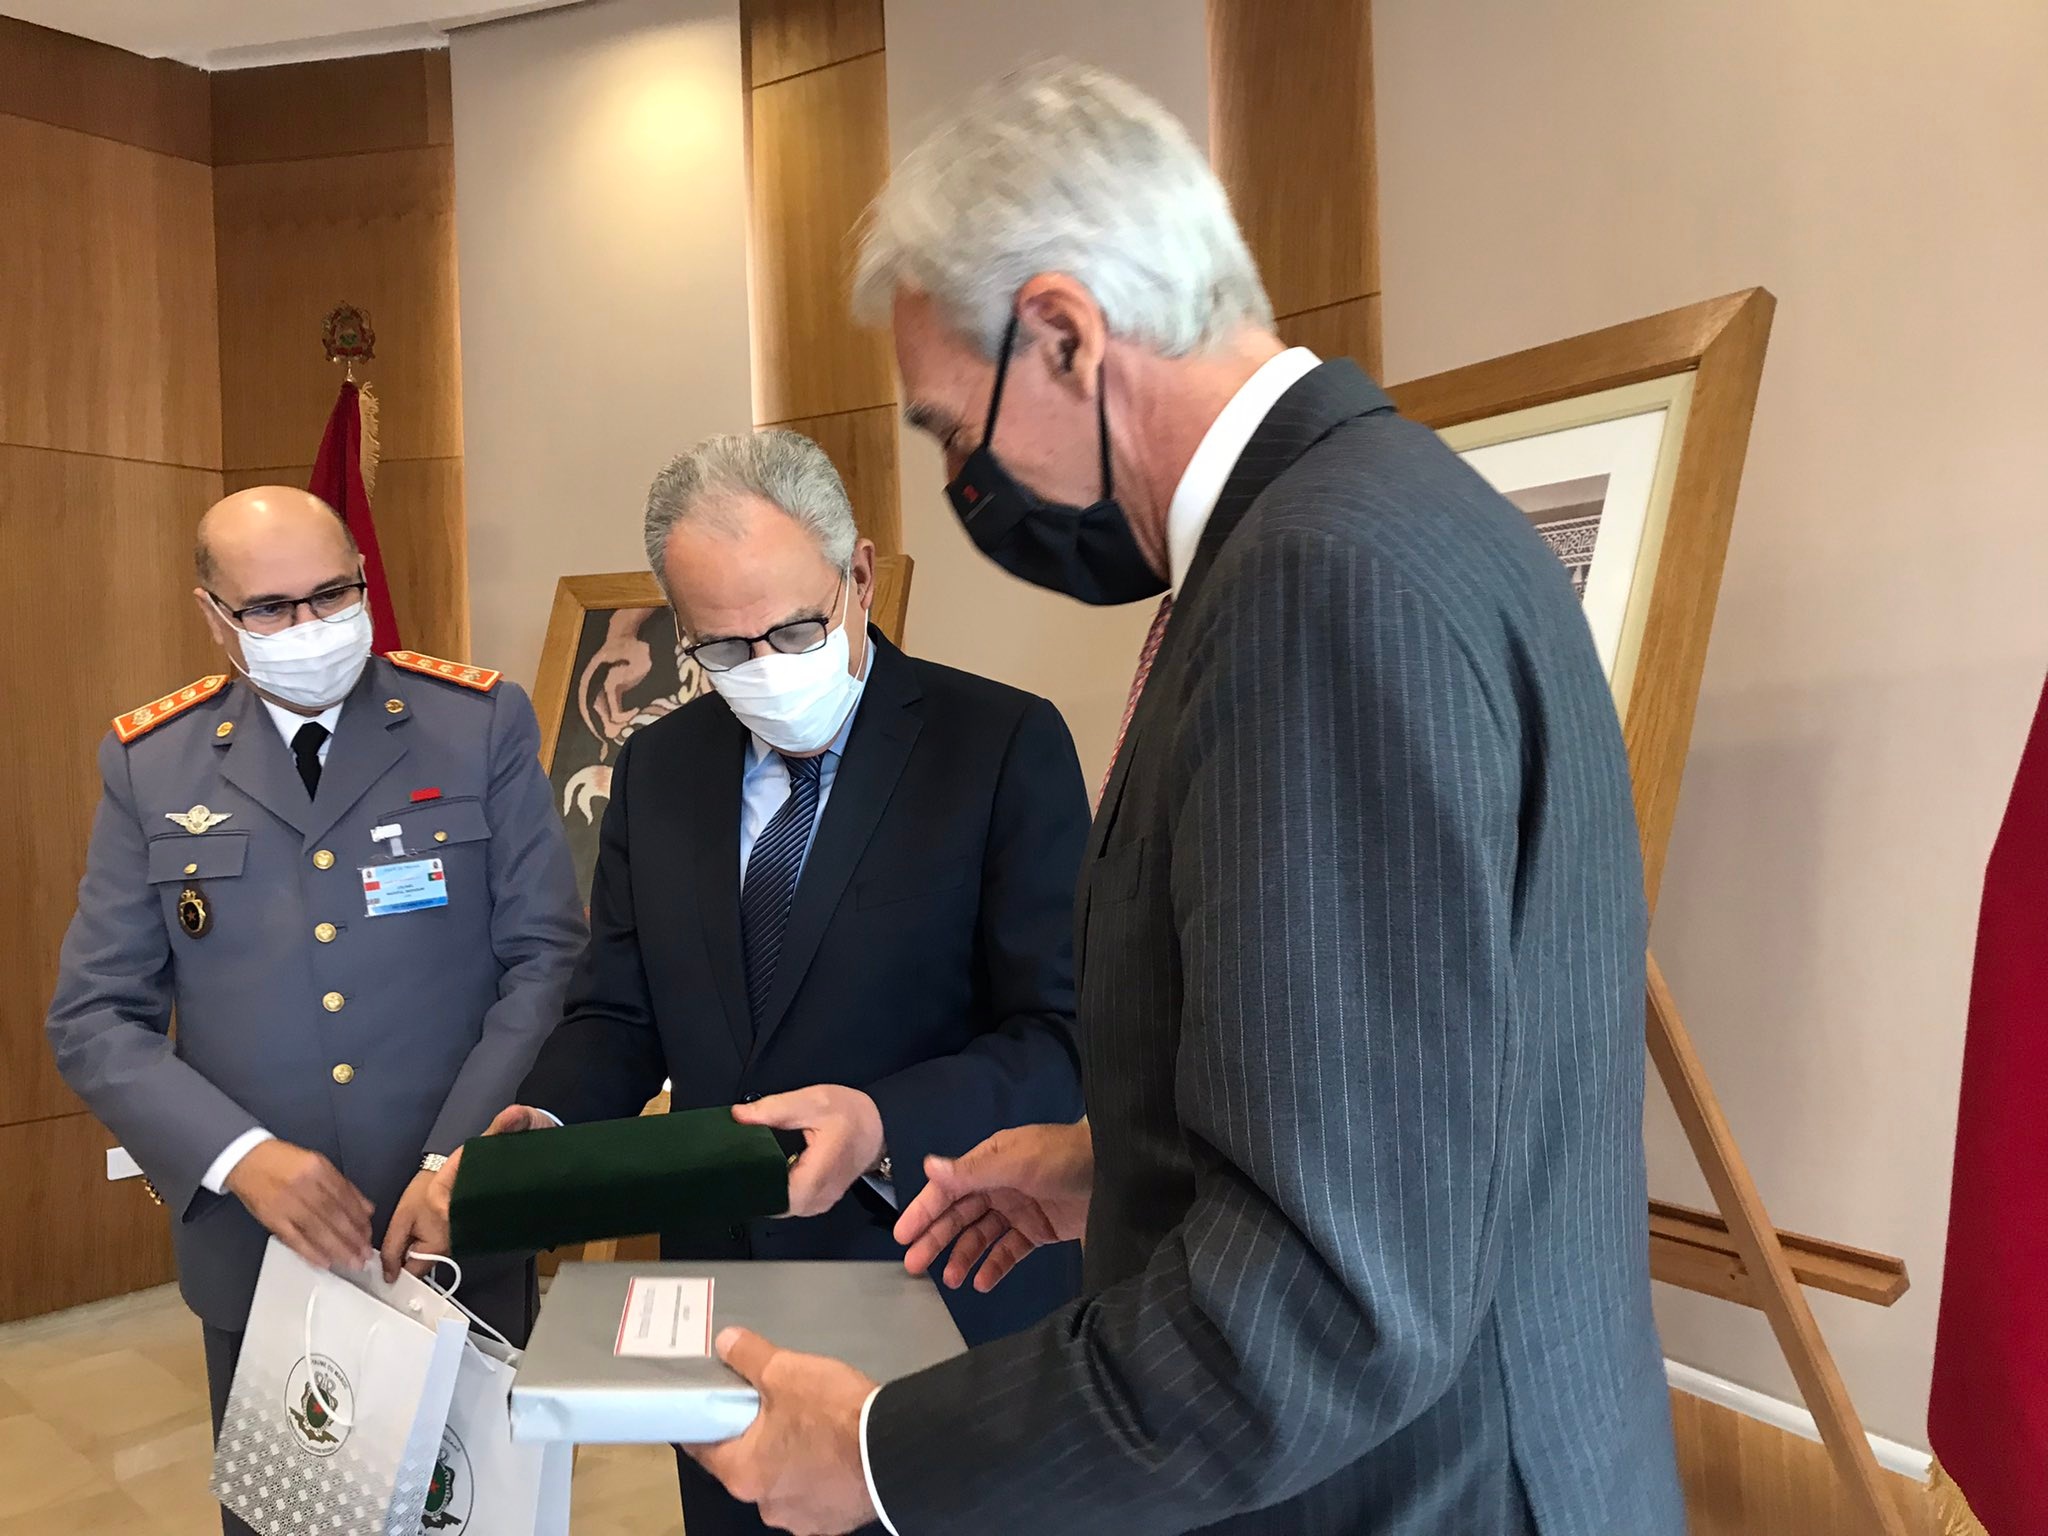 بتعليمات ملكية.. الوزير لوديني والجنرال الفاروق يستقبلان وزير الدفاع البرتغالي